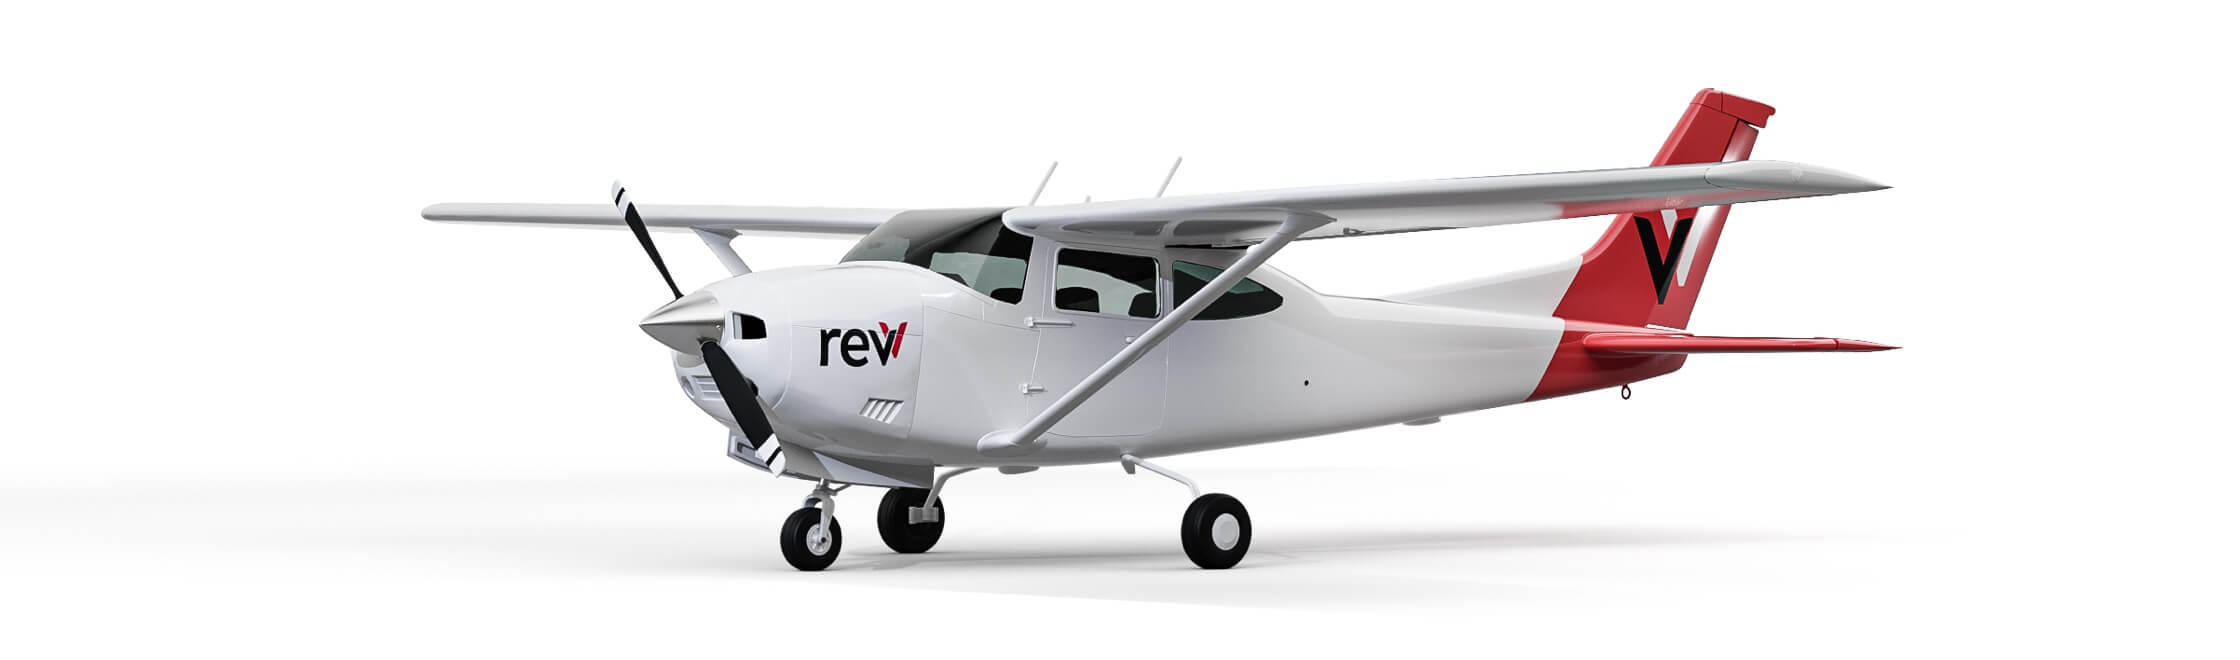 Revv Cessna 182